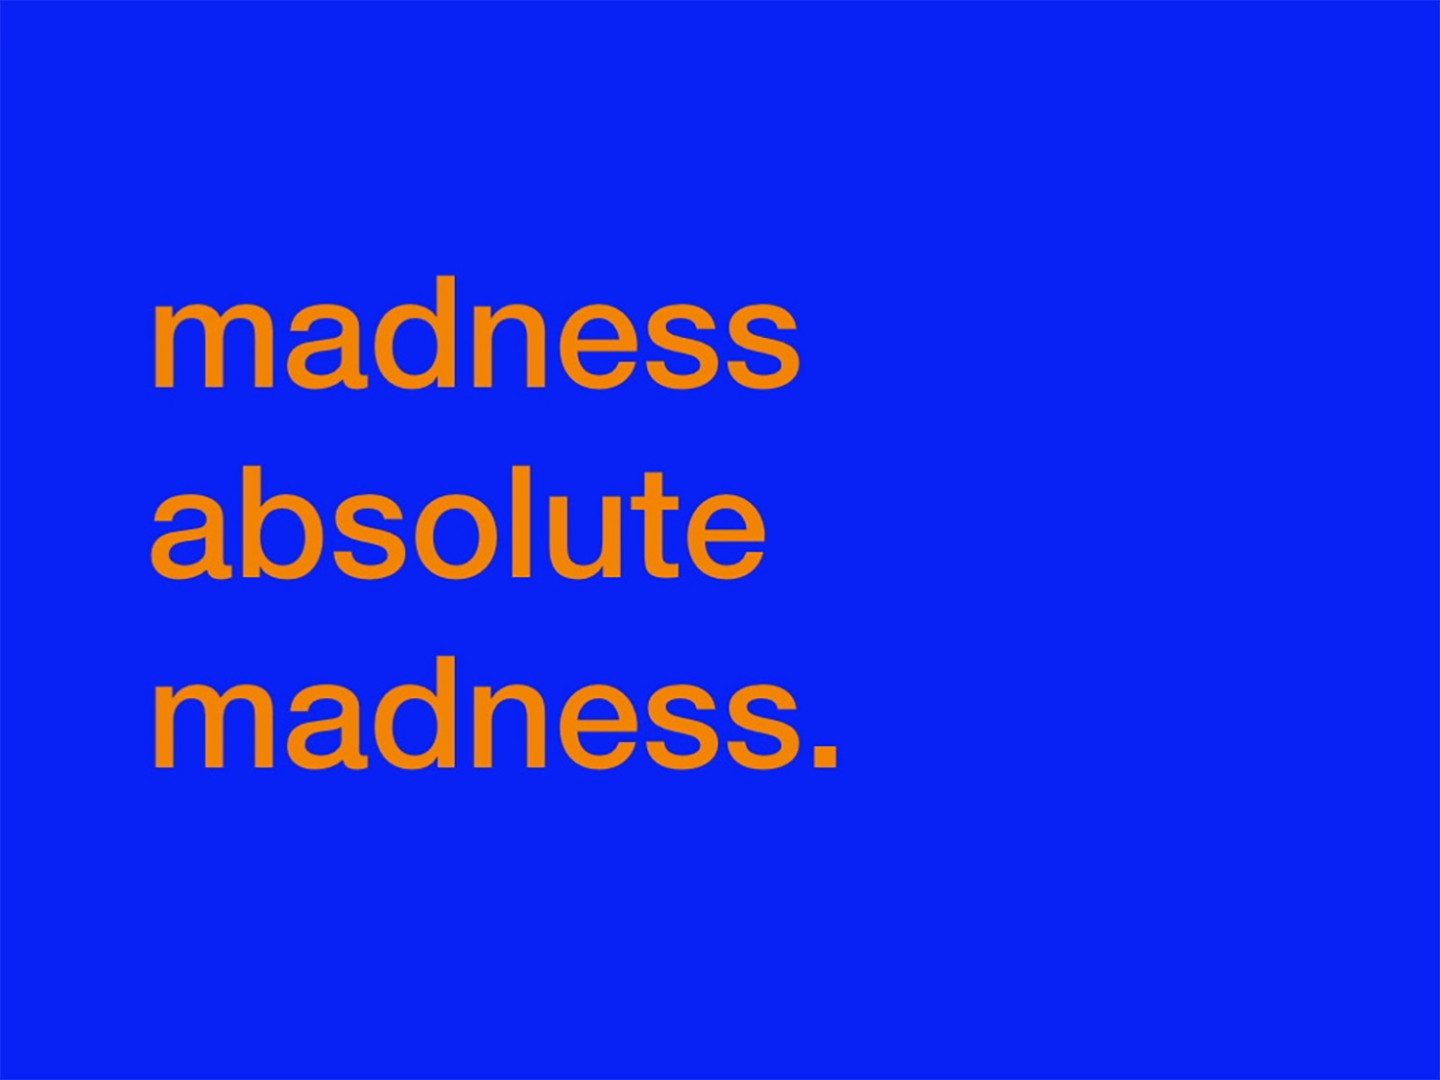 blå bakgrund med en text som säger: madness, absolute madness. (Galenskap, absolut galenskap)